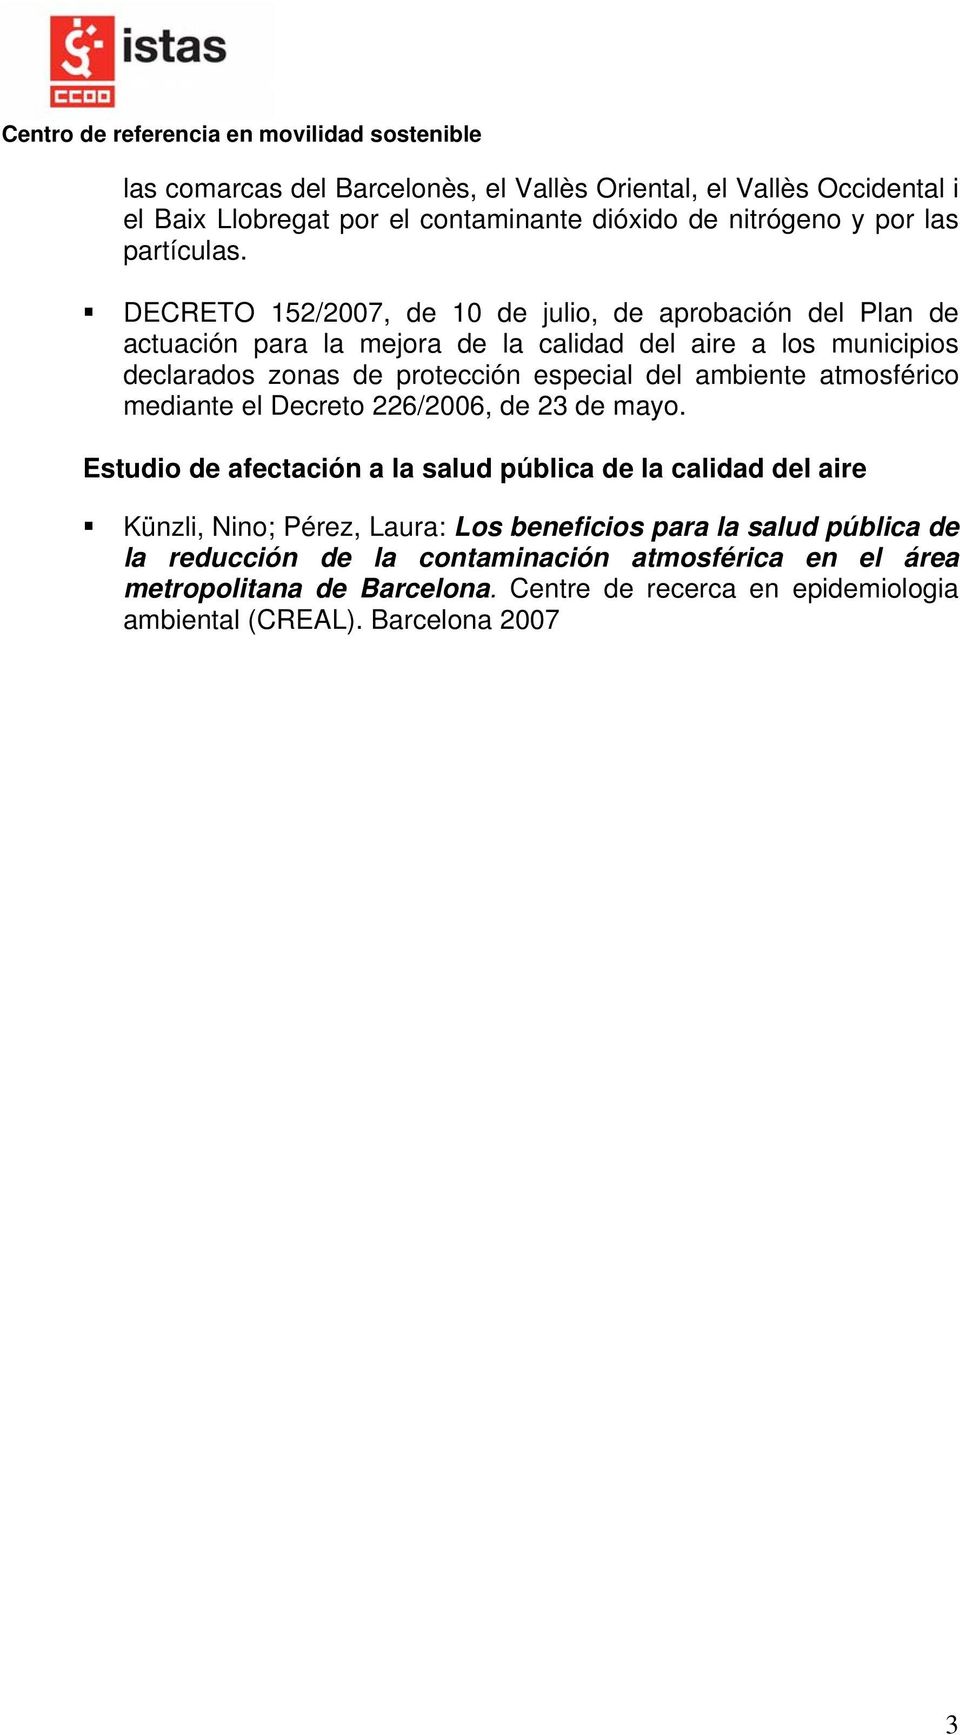 DECRETO 152/2007, de 10 de julio, de aprobación del Plan de actuación para la mejora de la calidad del aire a los municipios declarados zonas de protección especial del ambiente